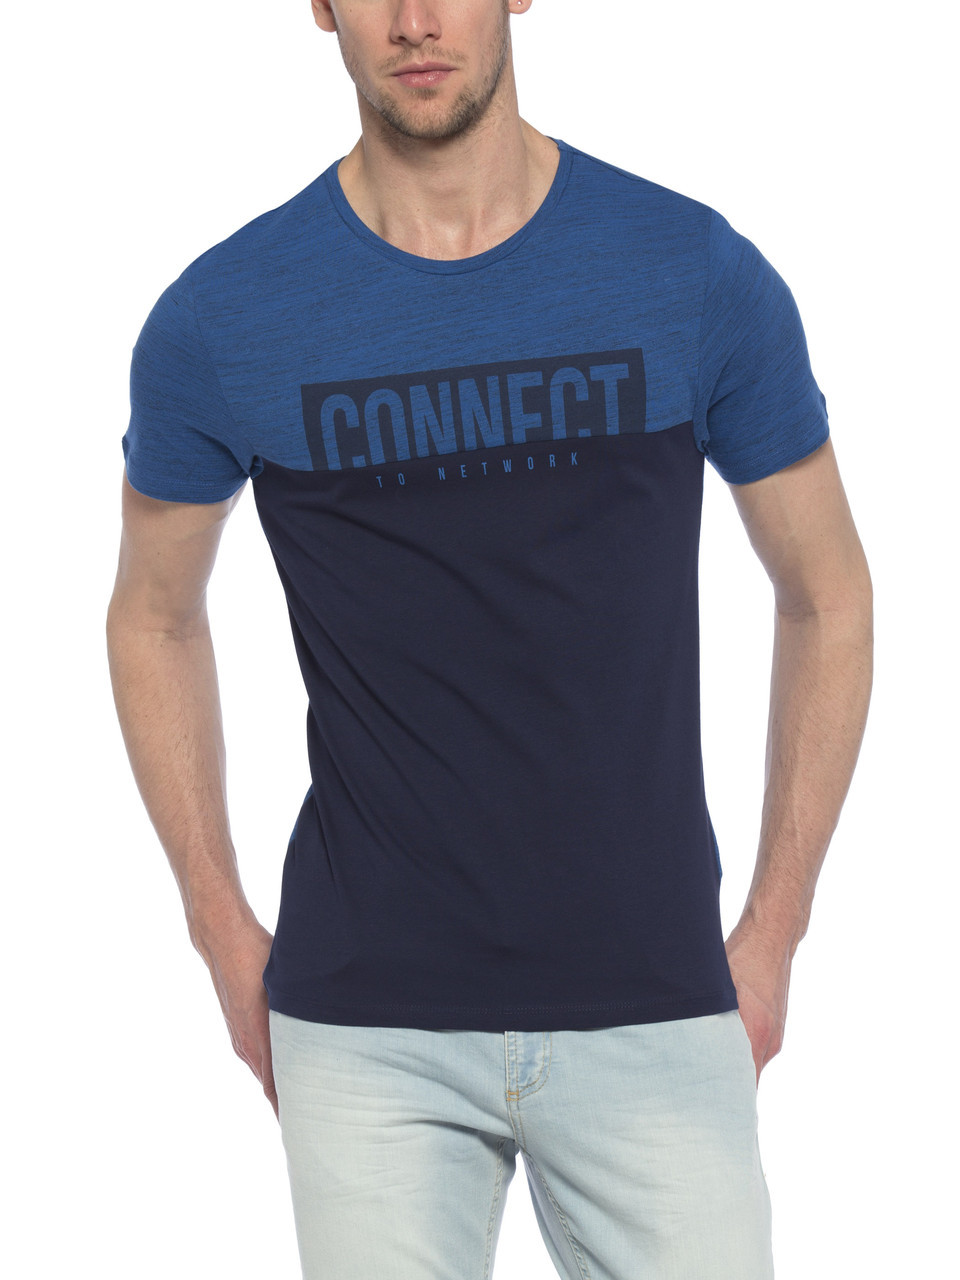 Синя чоловіча футболка Lc Waikiki / Лз Вайкікі з написом Connect to network, фото 1